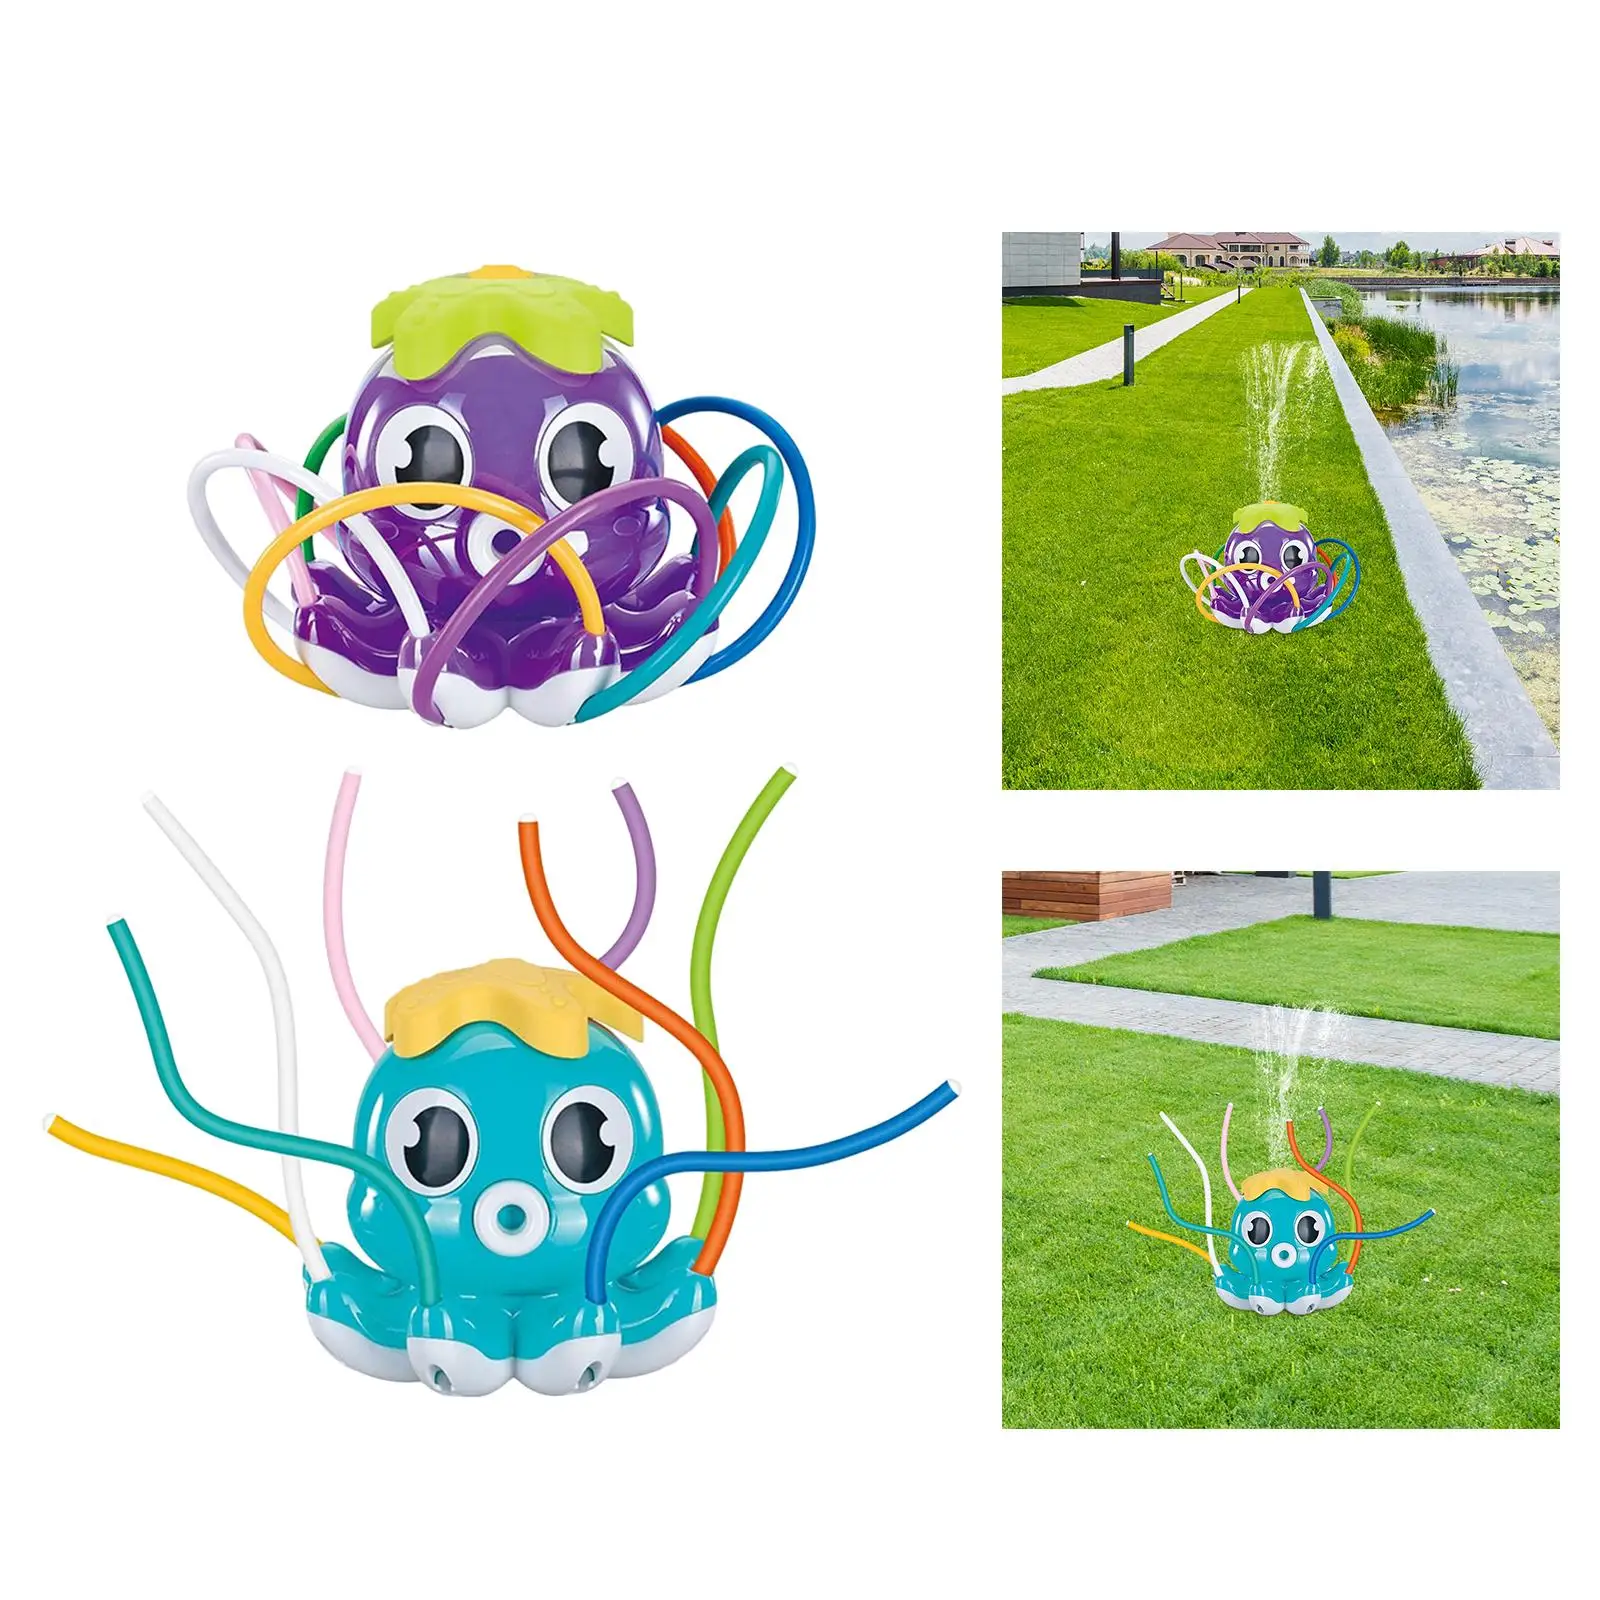 Octopus Sprinkler Toy Backyard Game Water Splashing Fun Toy for Kids Holiday